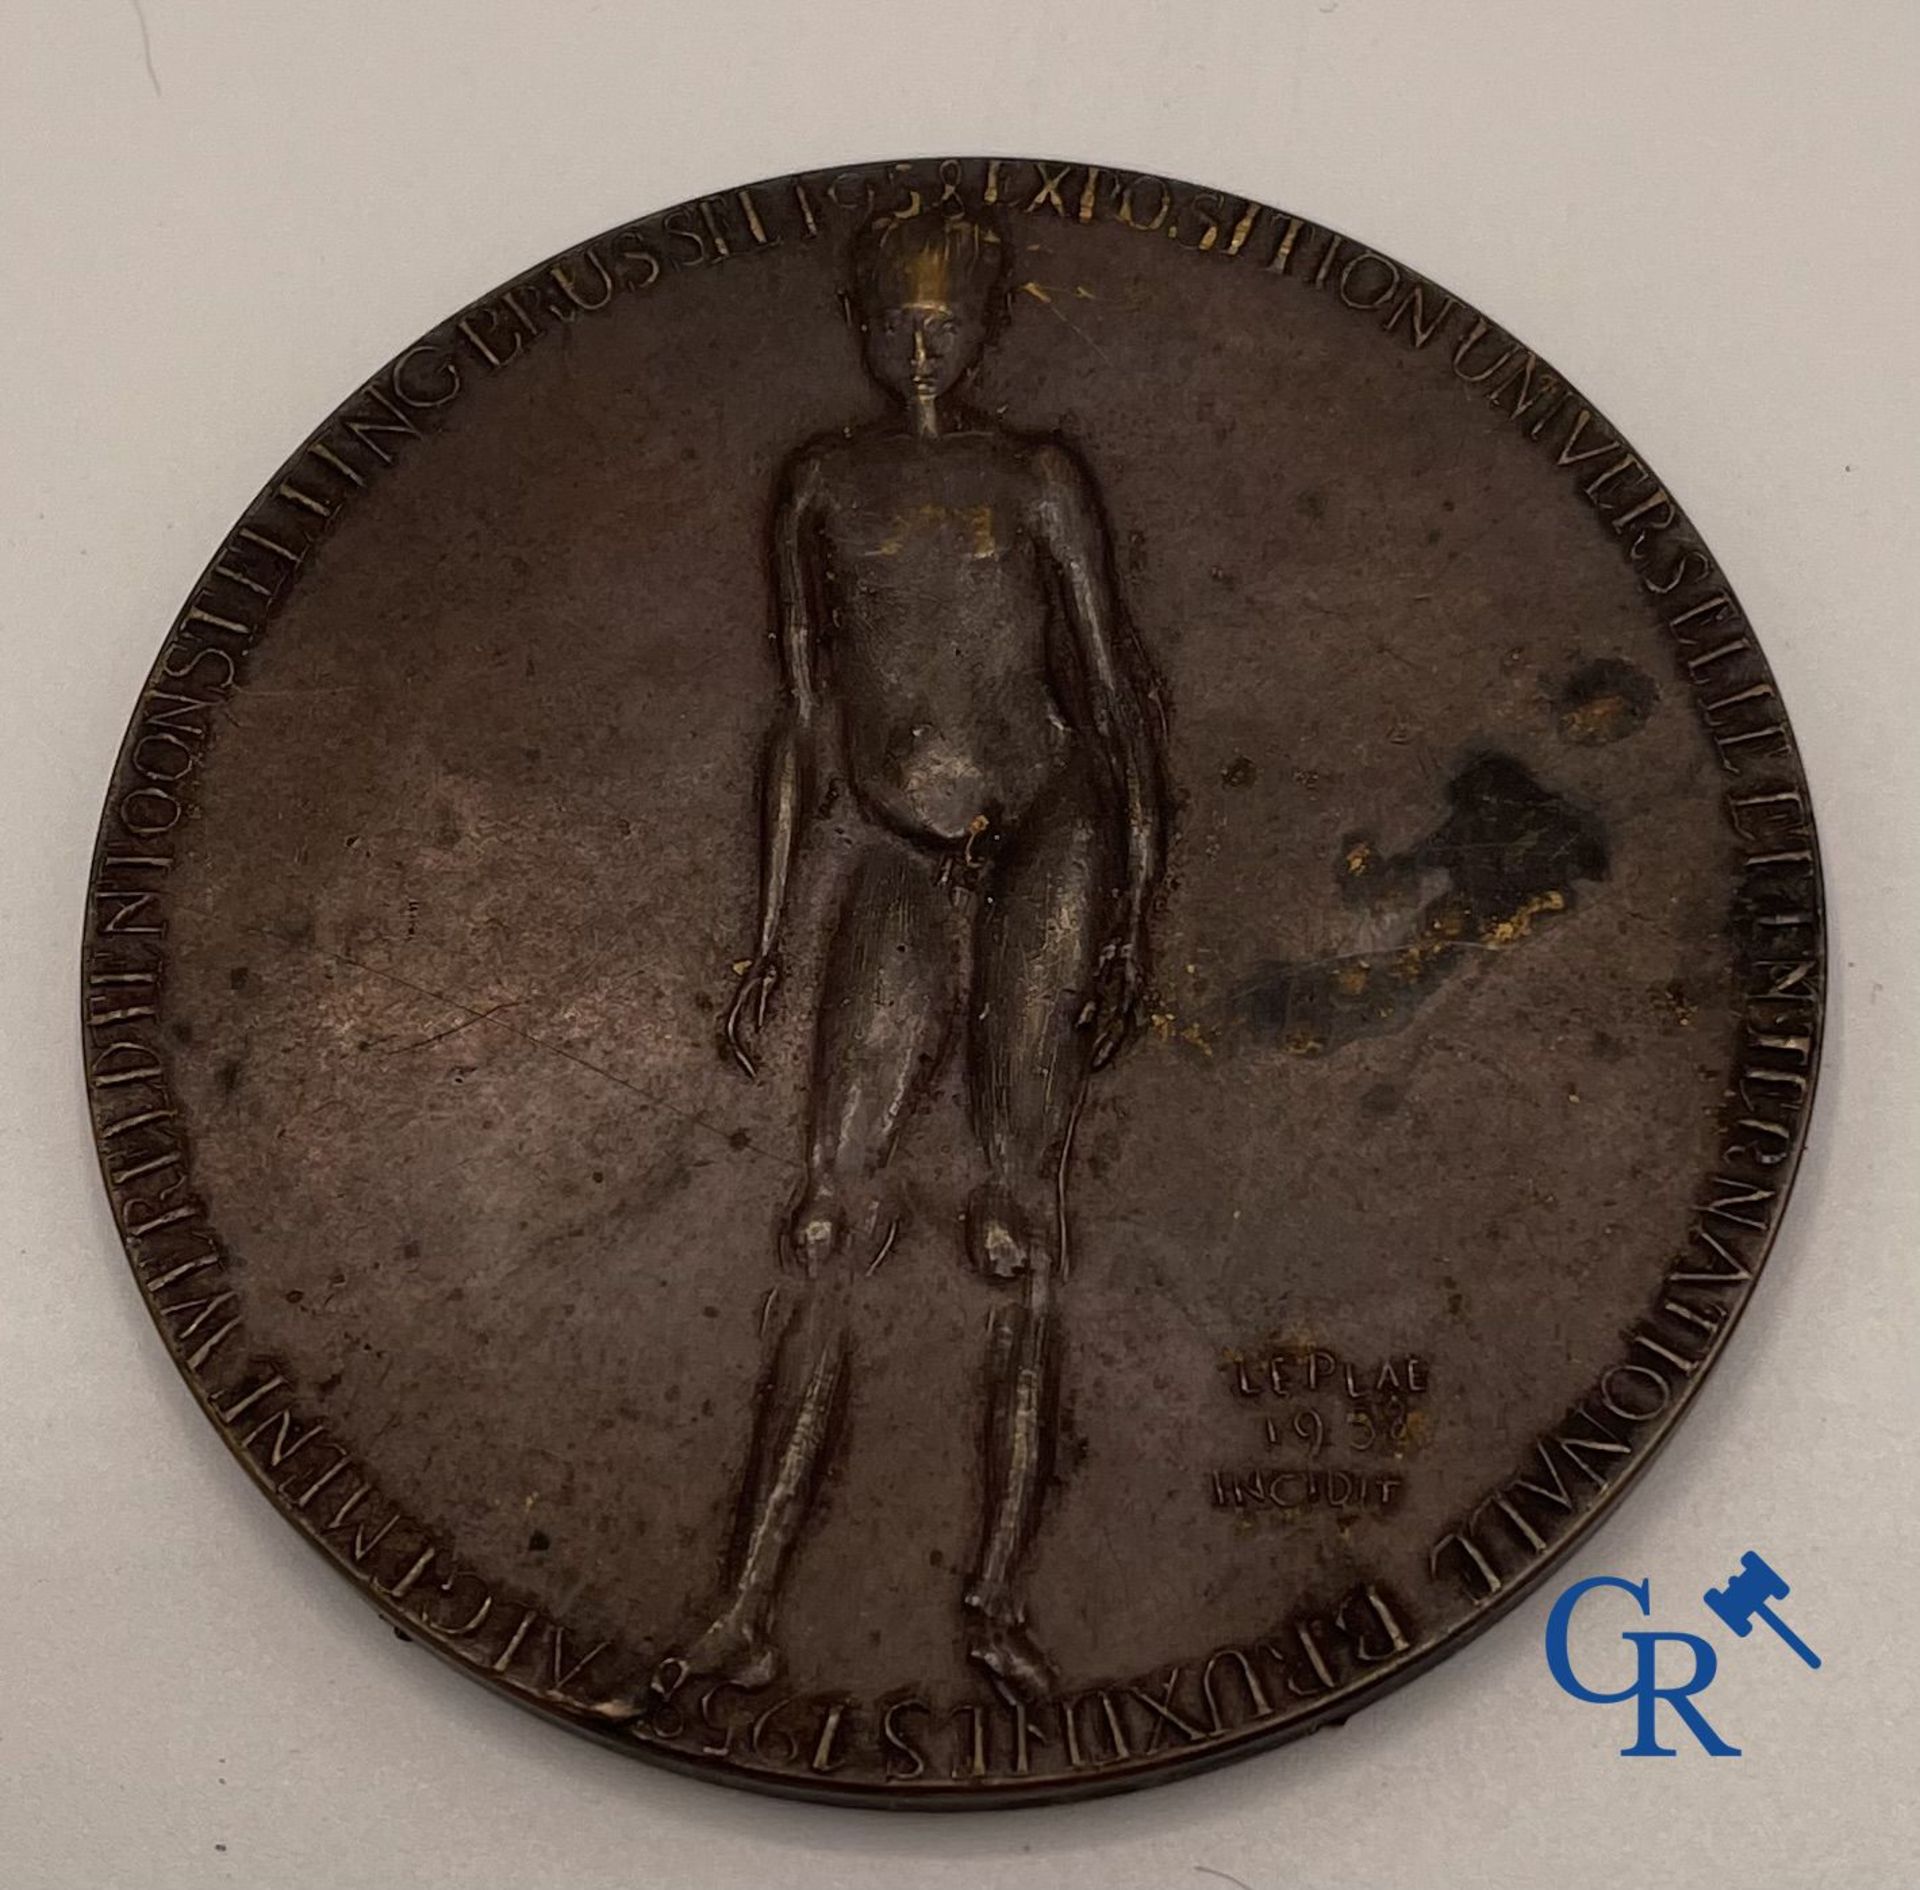 Medals: 3 bronze medals World Exhibition Brussels 1935 and 1958. - Bild 5 aus 5